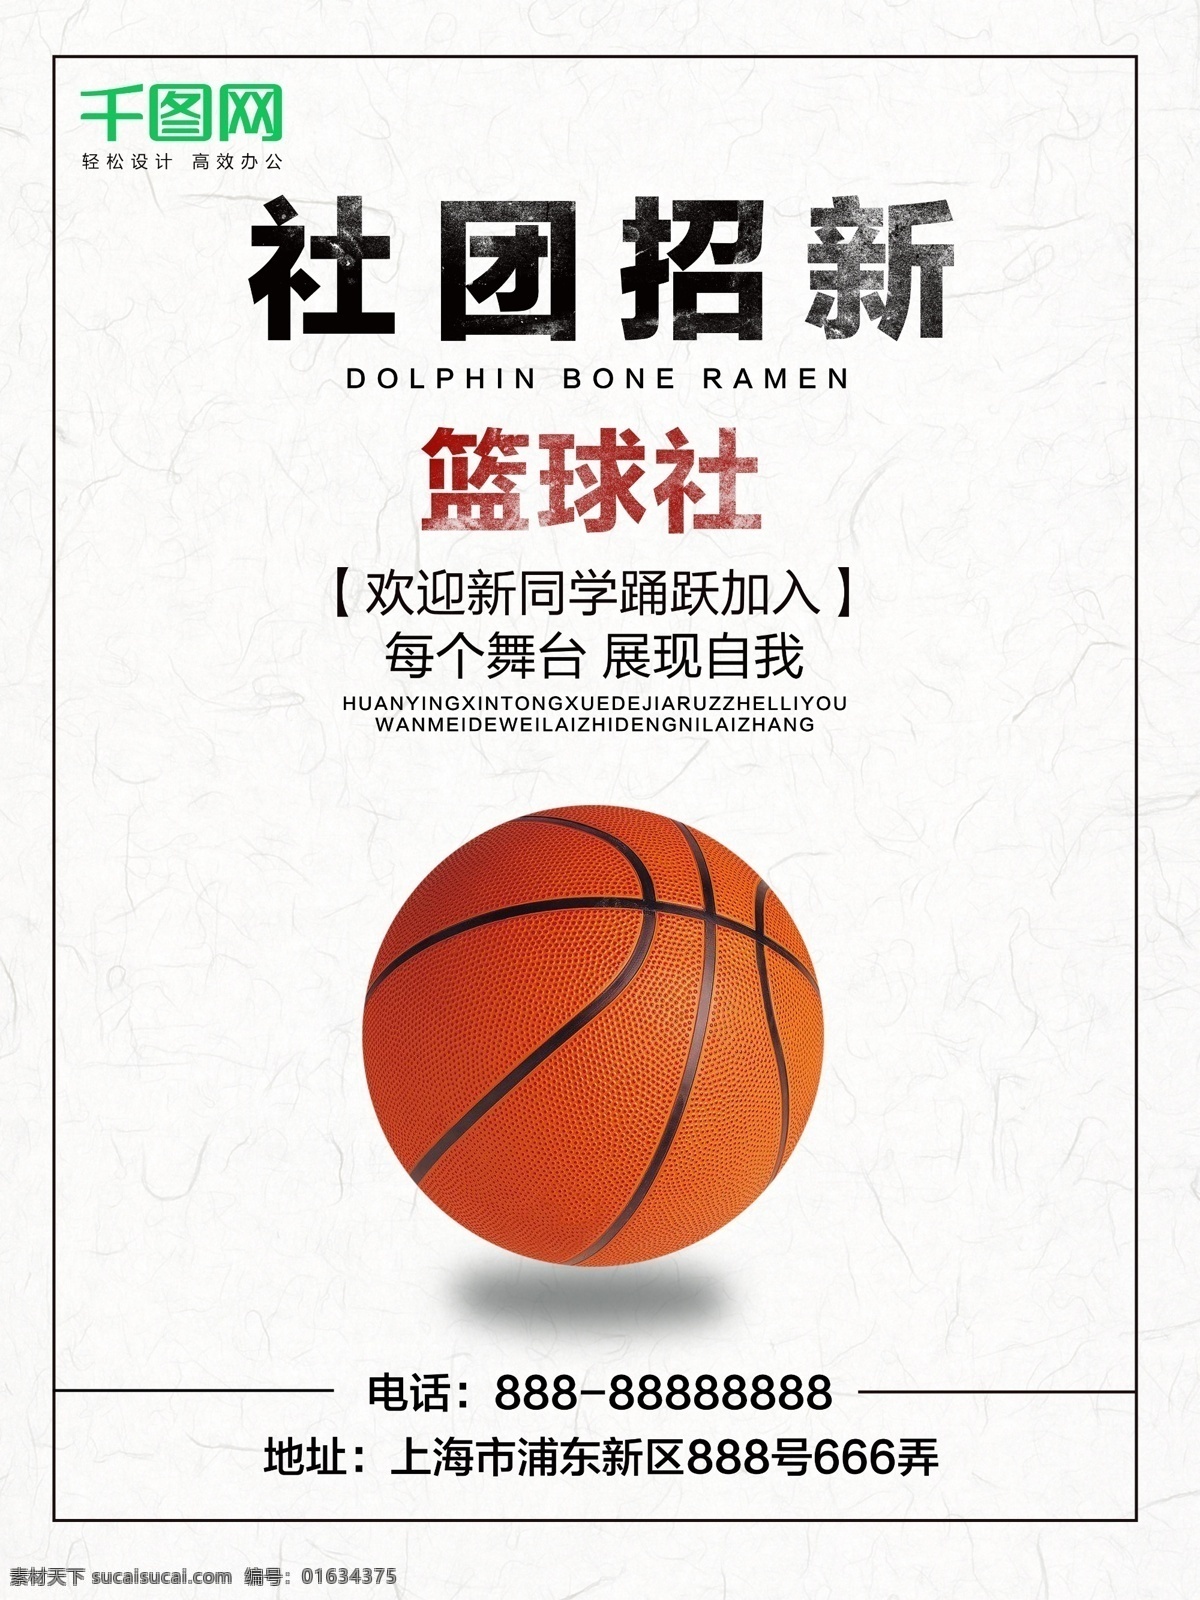 校园 社团 招 新 篮球 社 海报 招新 篮球社 校园海报 社团海报 招新海报 篮球社海报